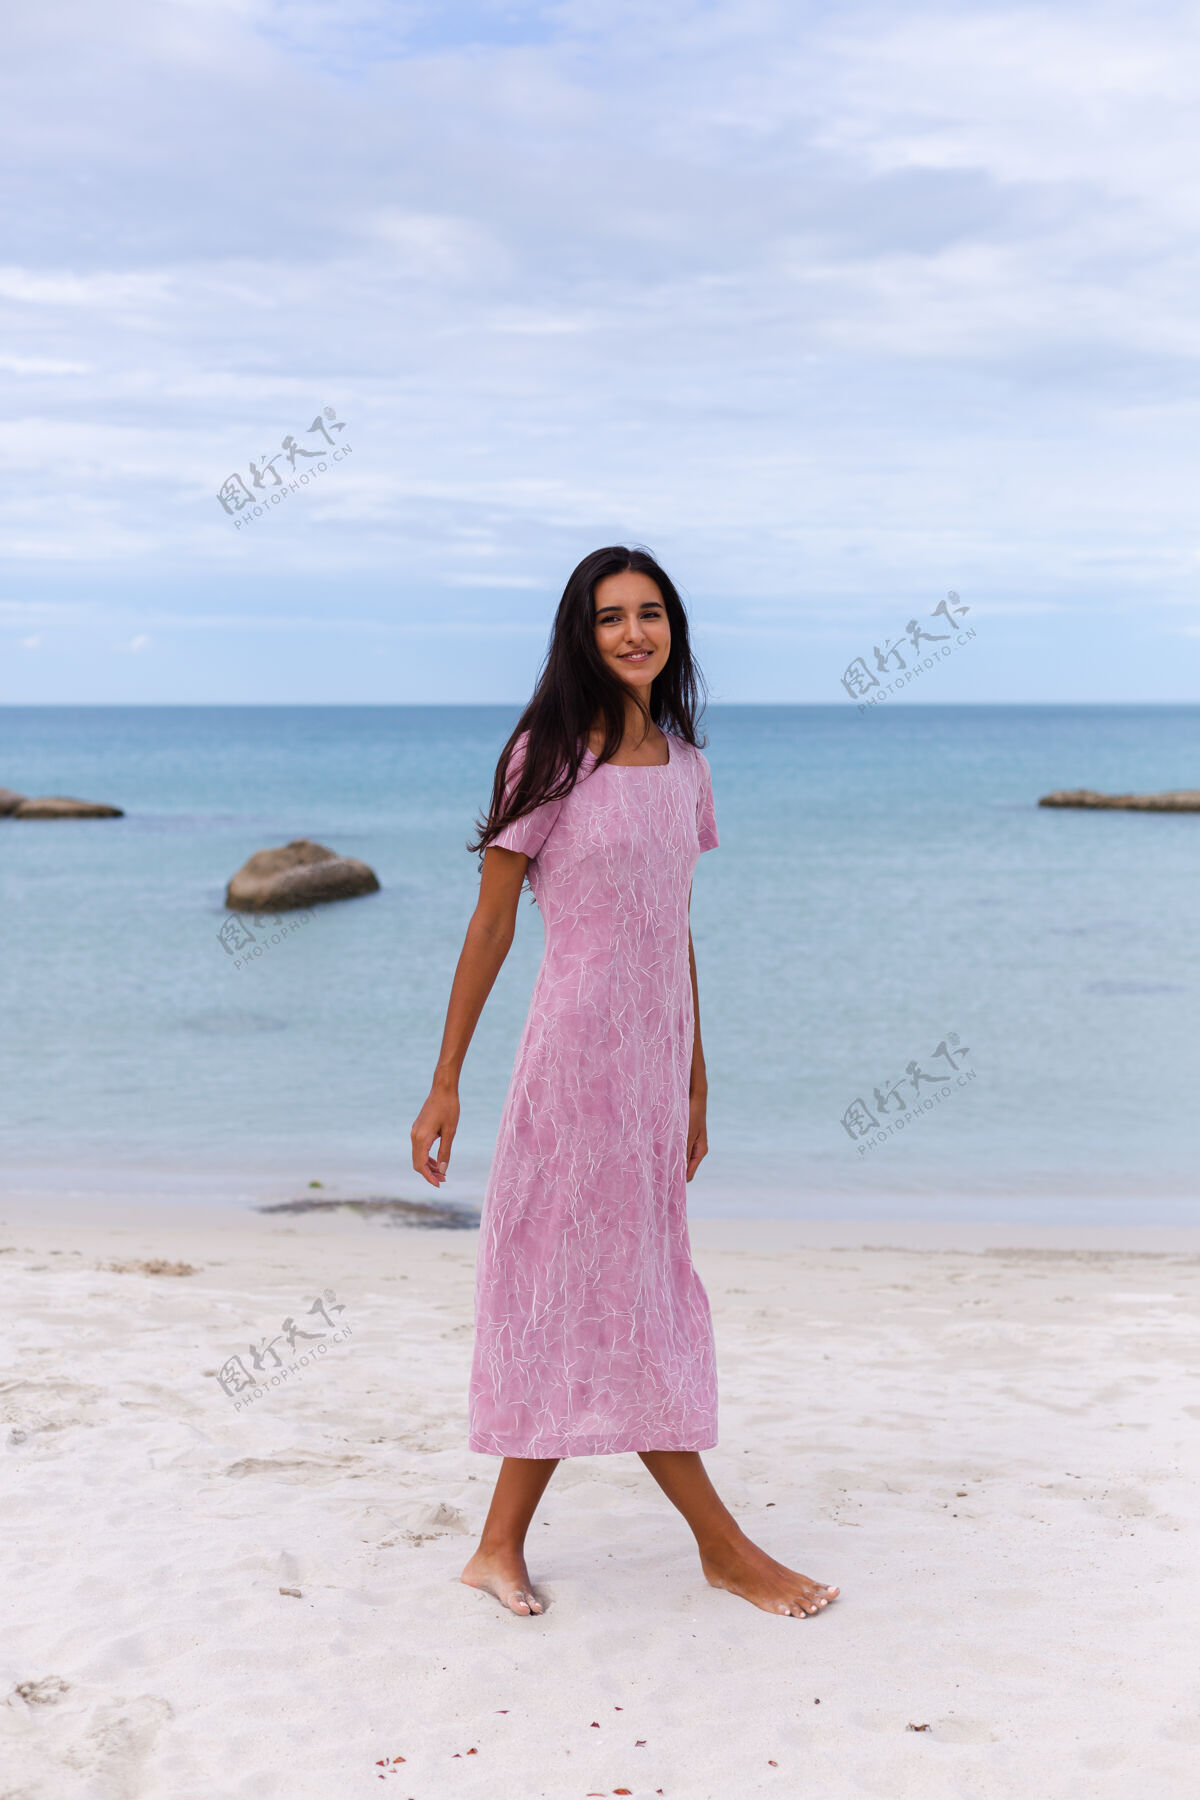 快乐一个年轻浪漫的女人 留着长长的黑发 穿着裙子 在沙滩上微笑着 笑着 一个人度过了一段美好的时光沙滩优雅美丽